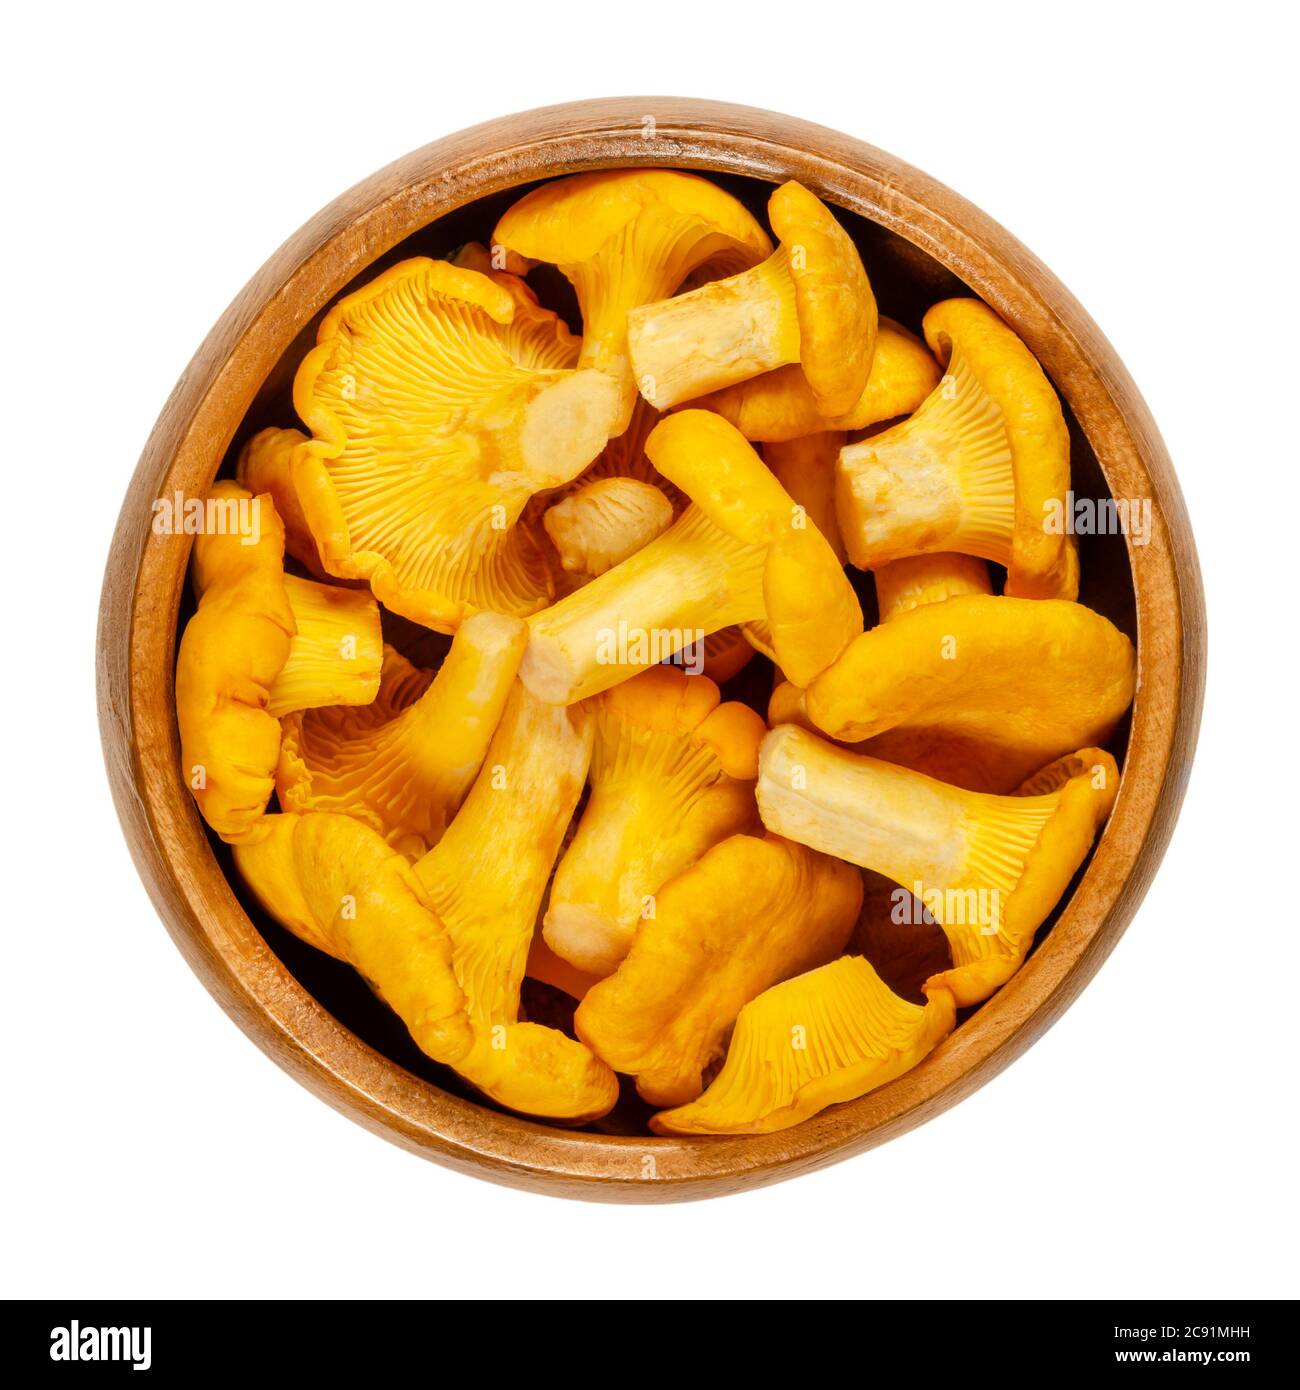 Chanterelle fresche in una ciotola di legno. Cantharellus, funghi commestibili di colore giallo intenso. Uno dei funghi più riconosciuti e raccolti. Foto Stock